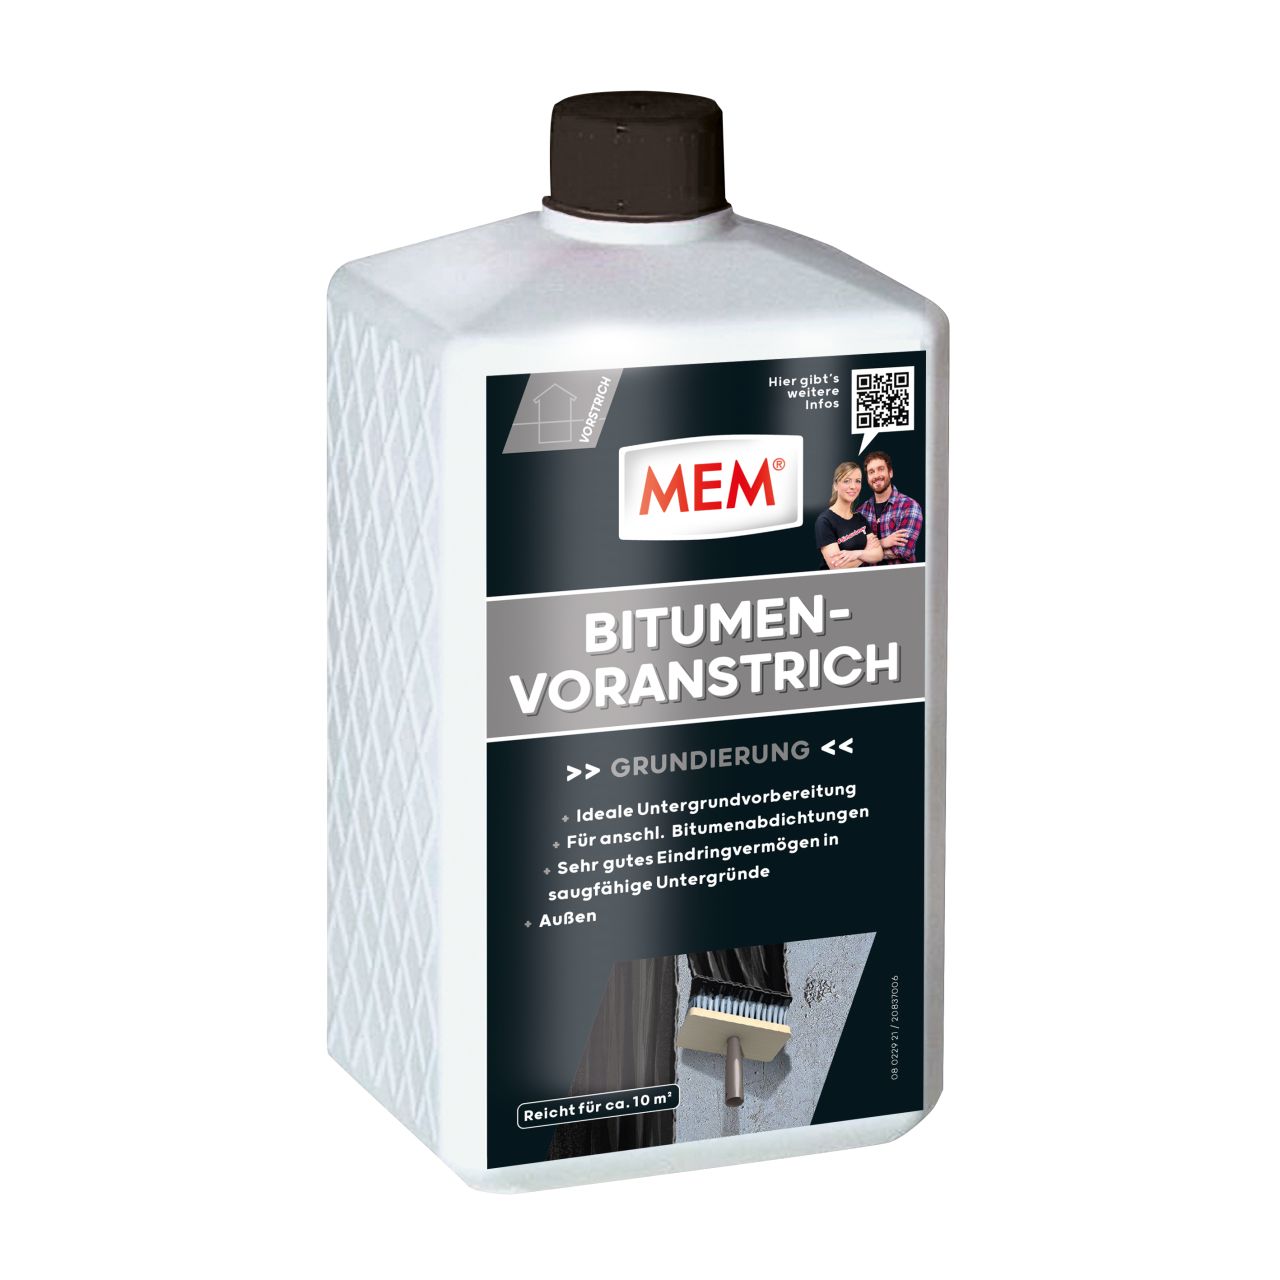 MEM Bitumen-Voranstrich 1 l von Mem